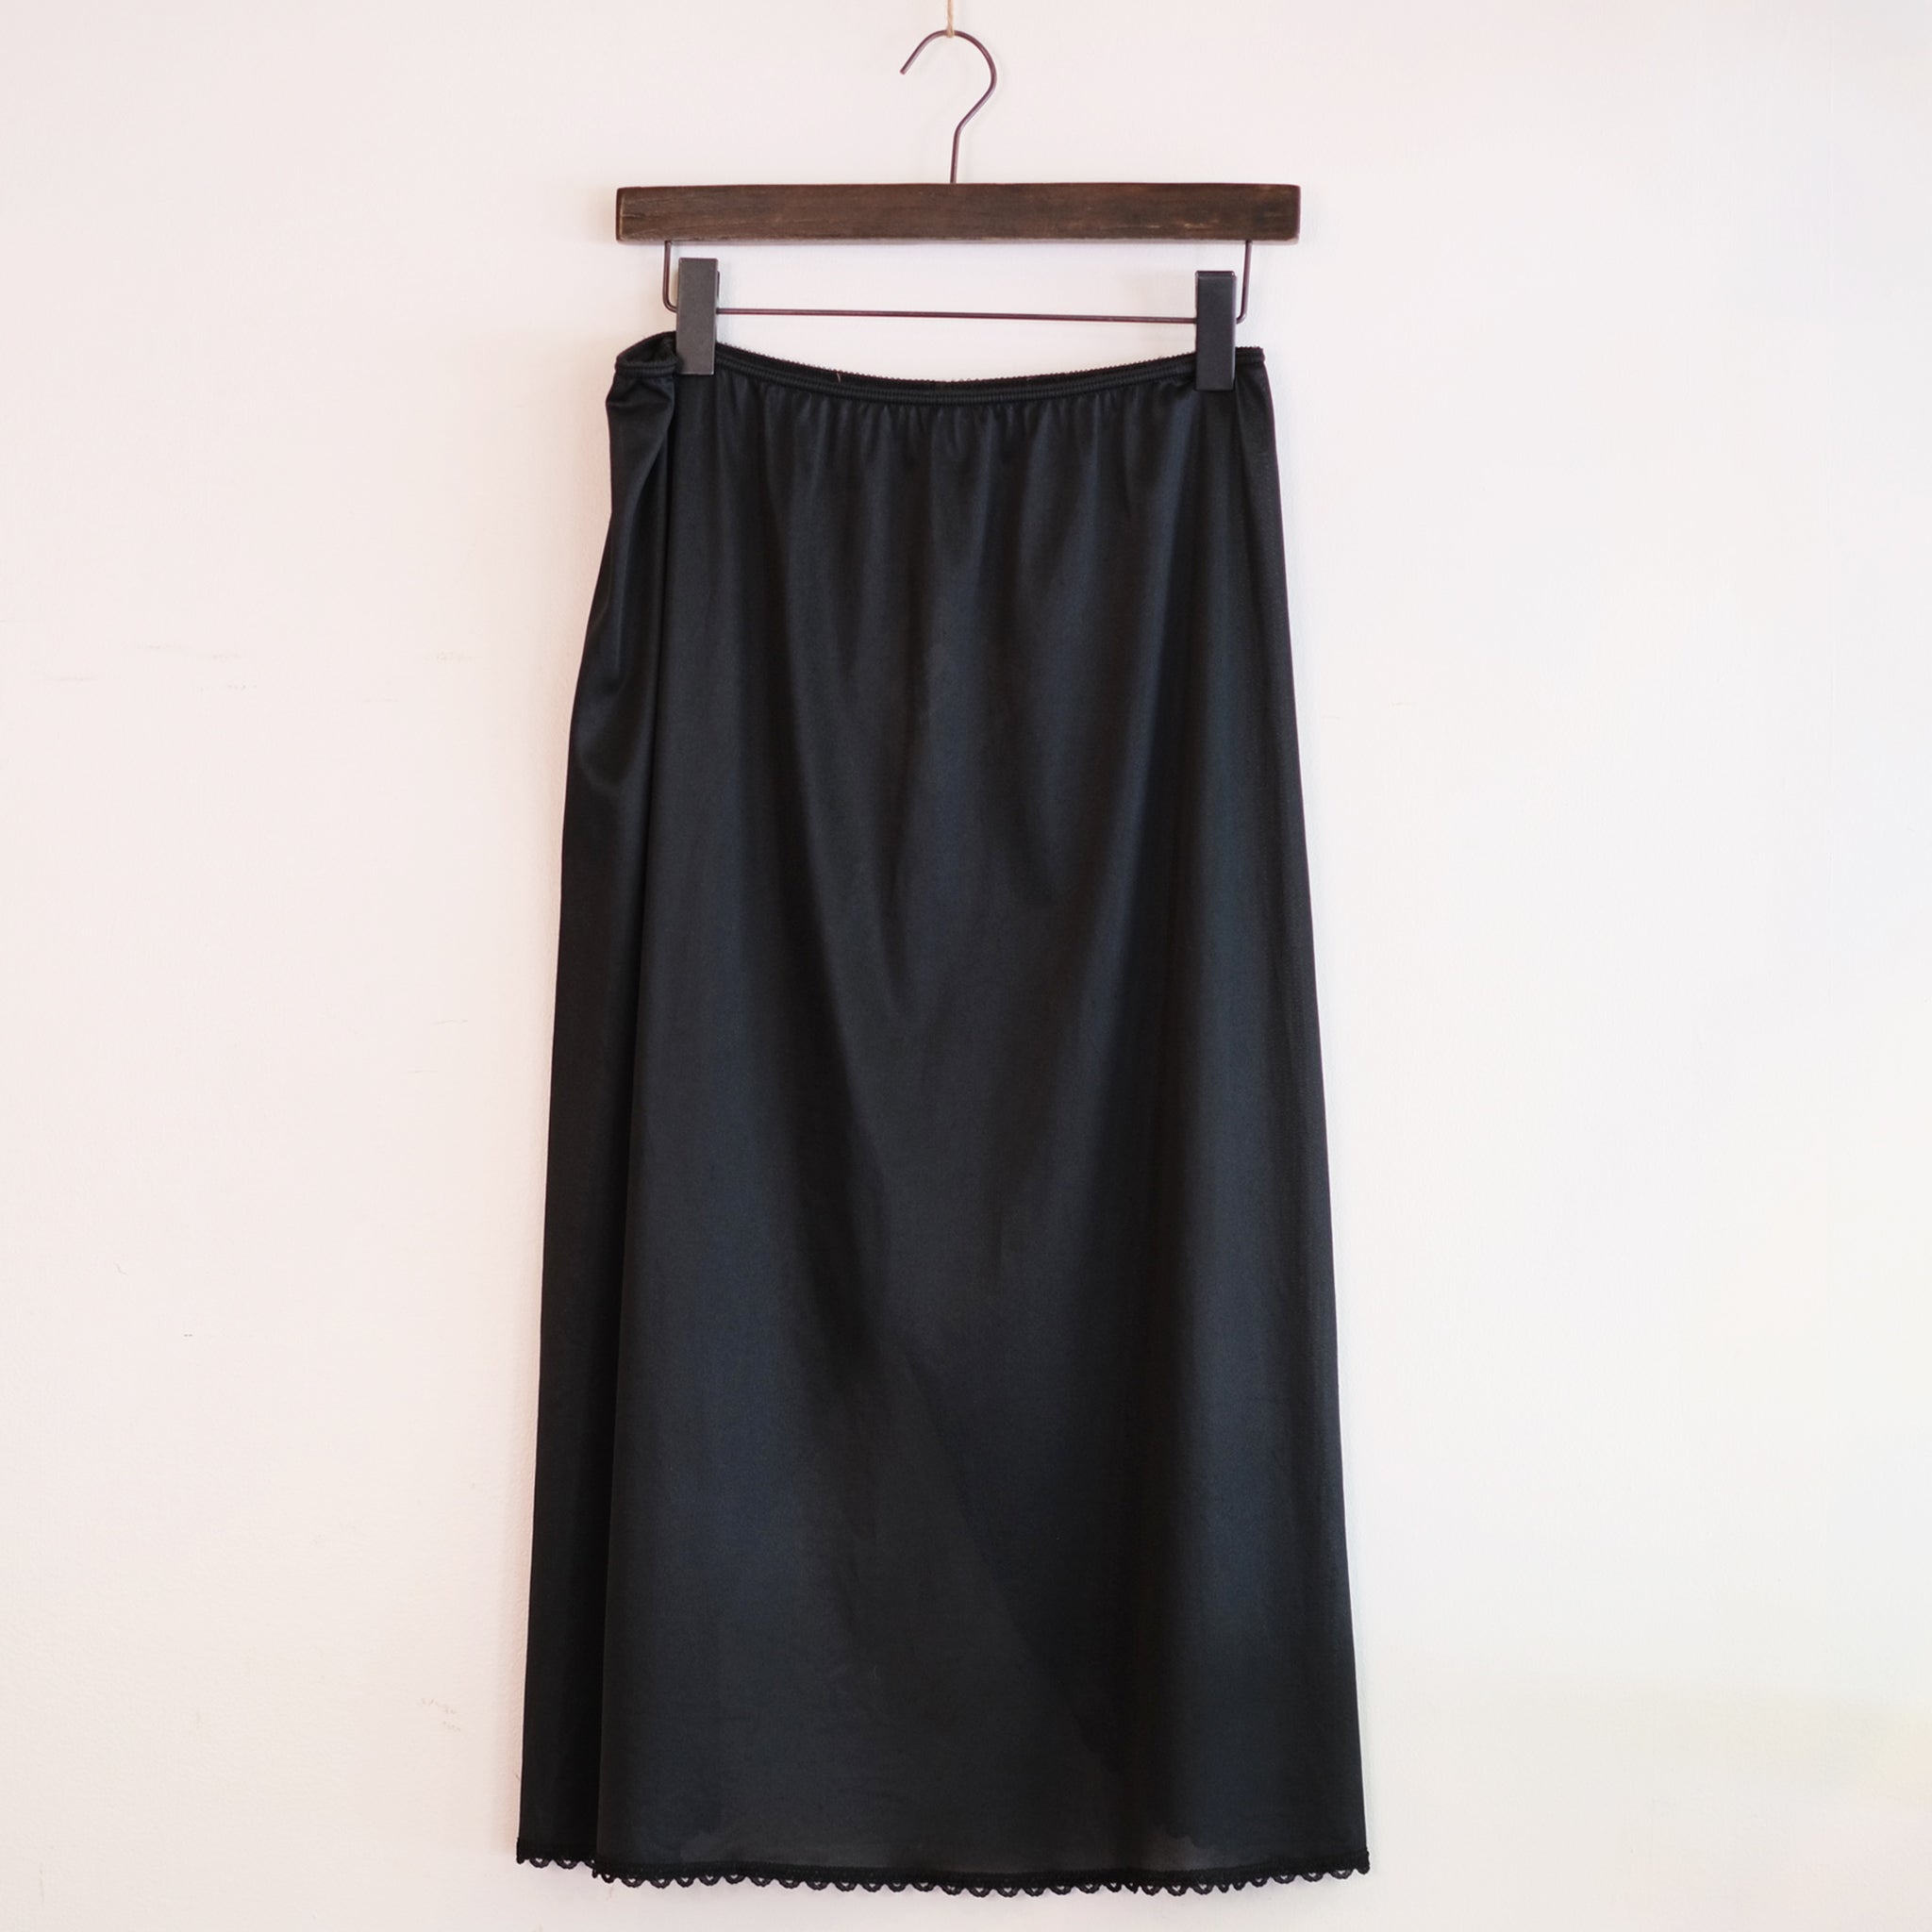 Sears Black Slip Skirt